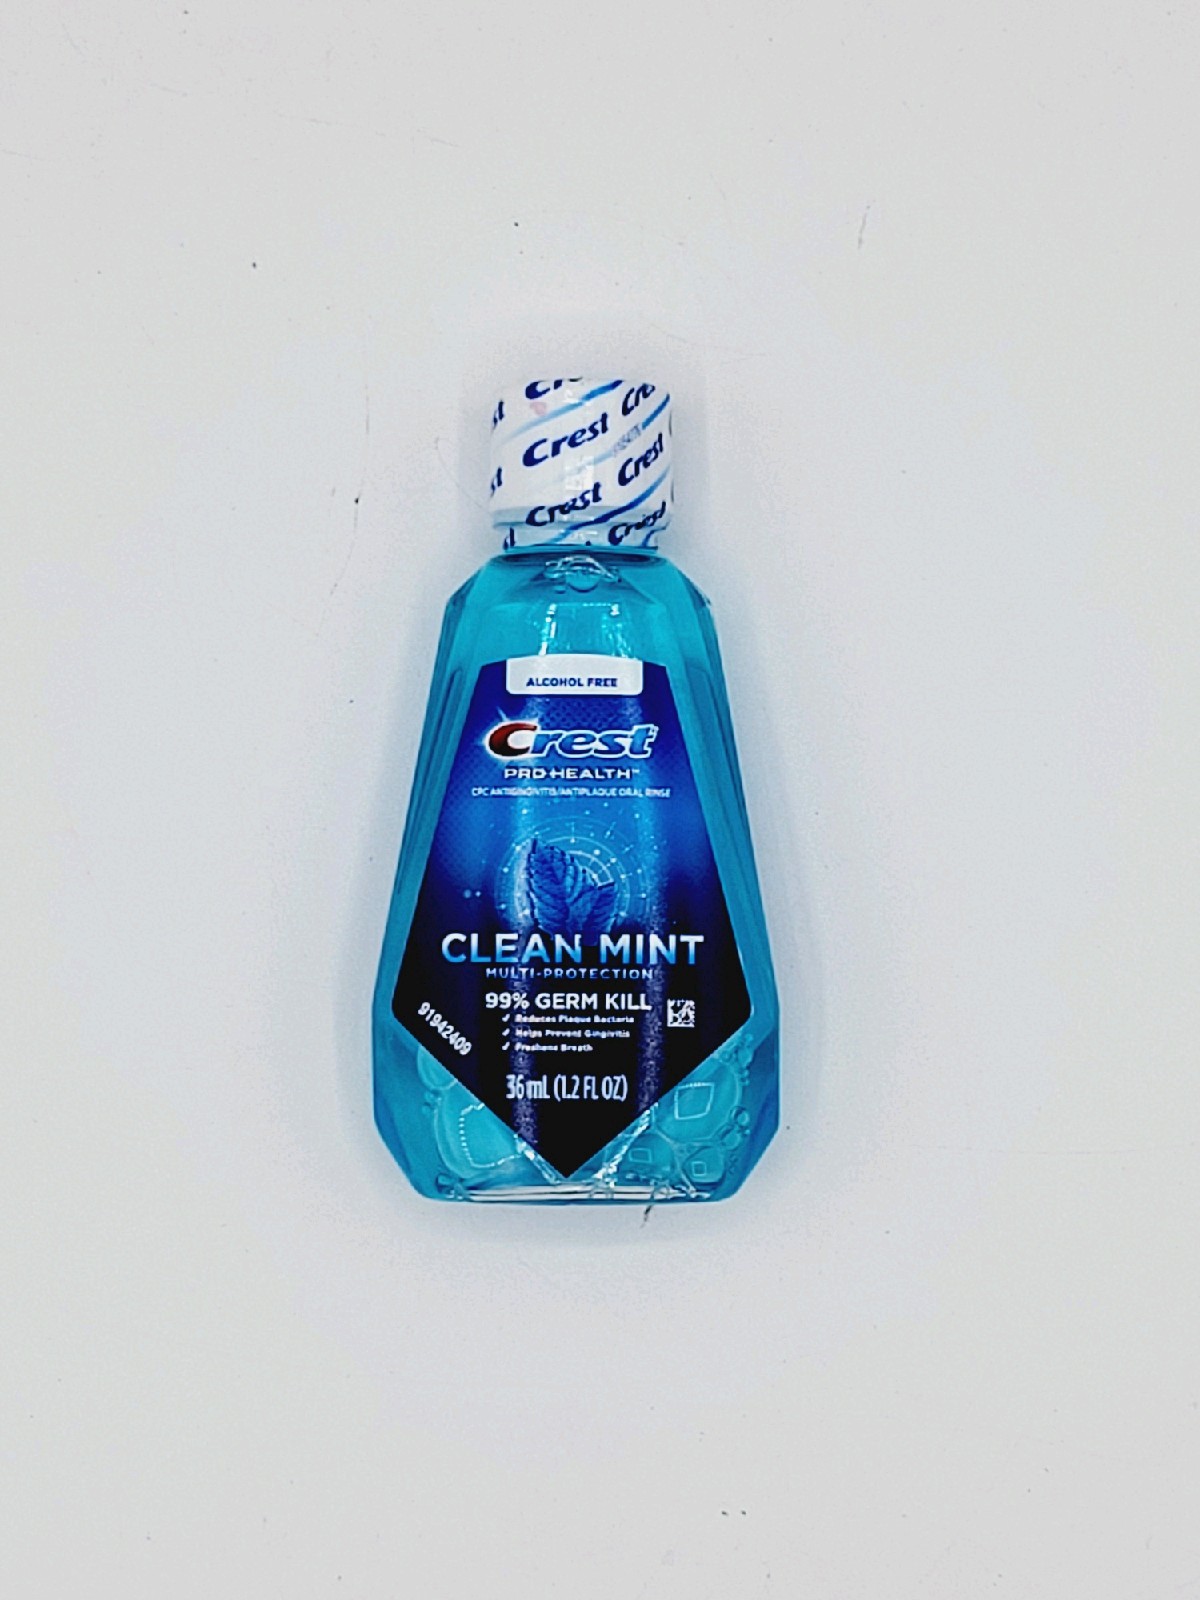 Crest Mouthwash Clean Mint 1.2 oz